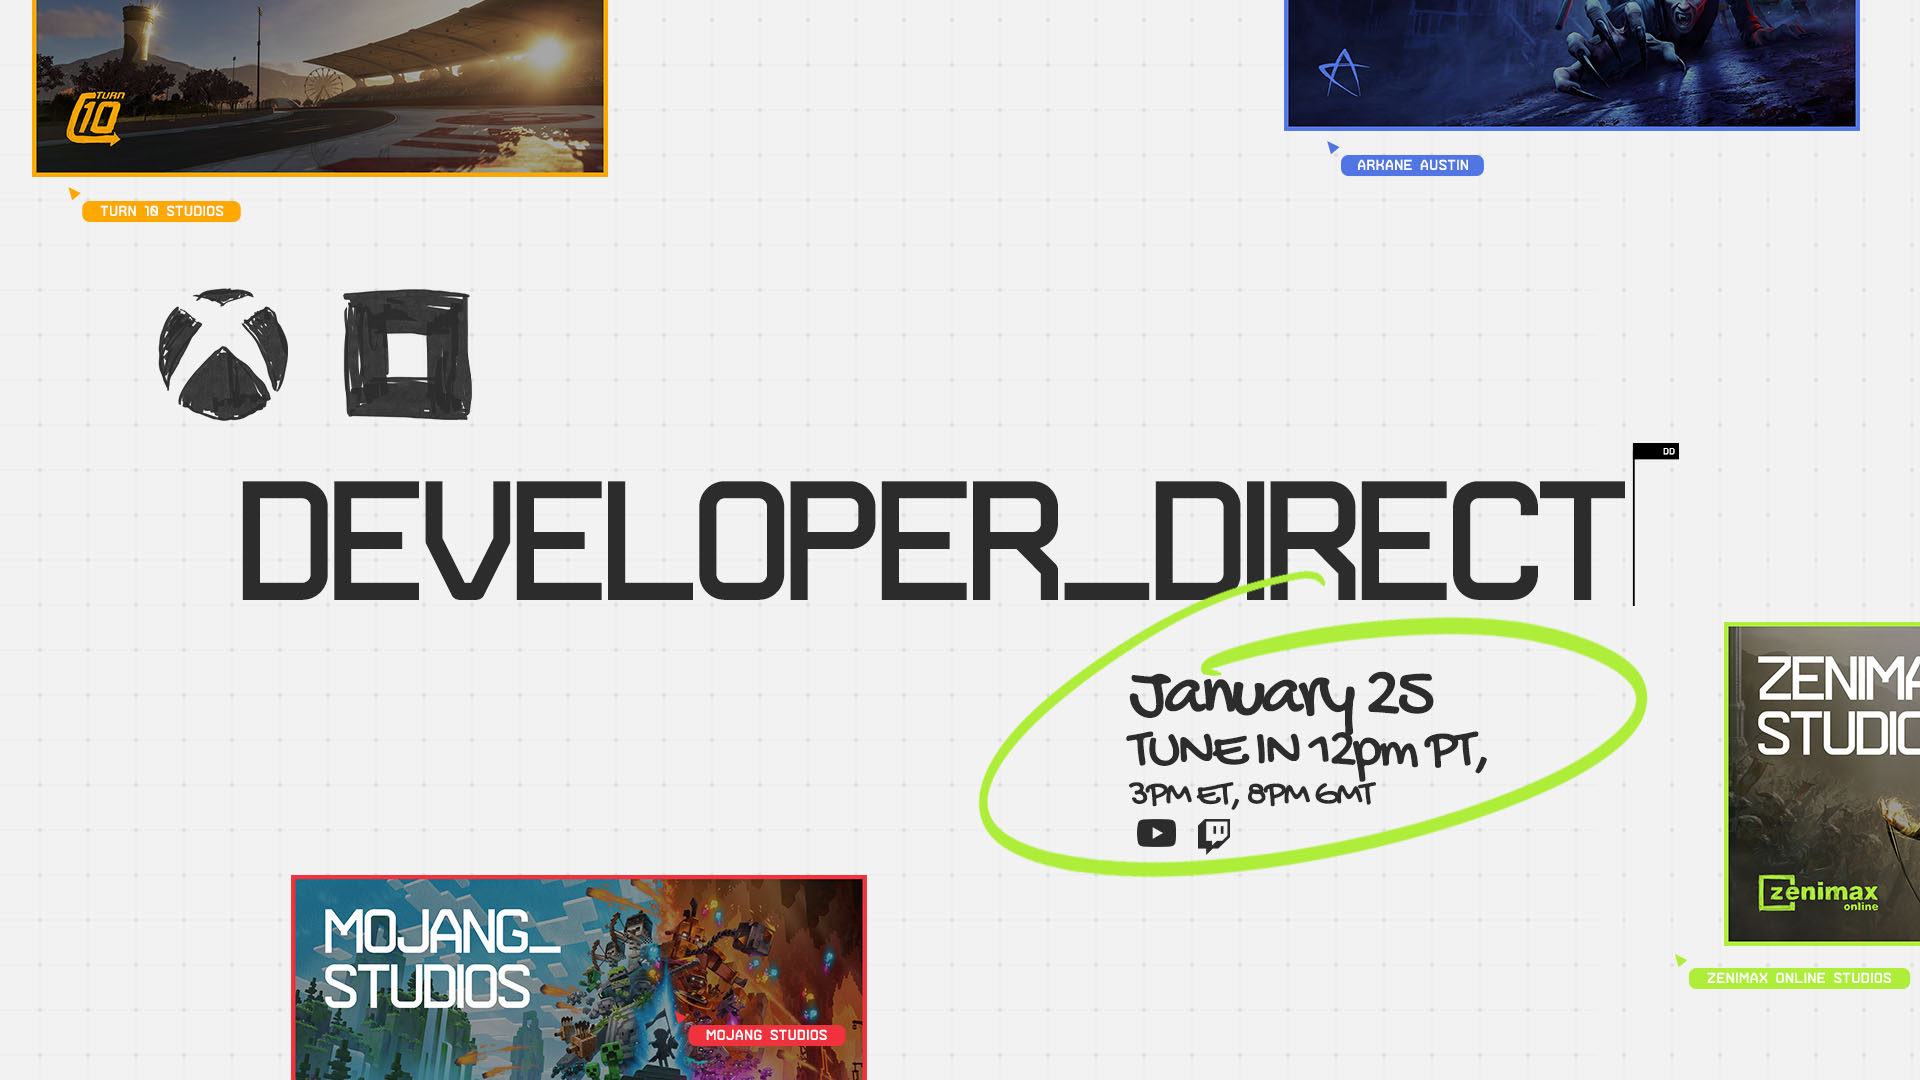 Xbox i Bethesda zaprezentują transmisję na żywo Developer_Direct 25 stycznia